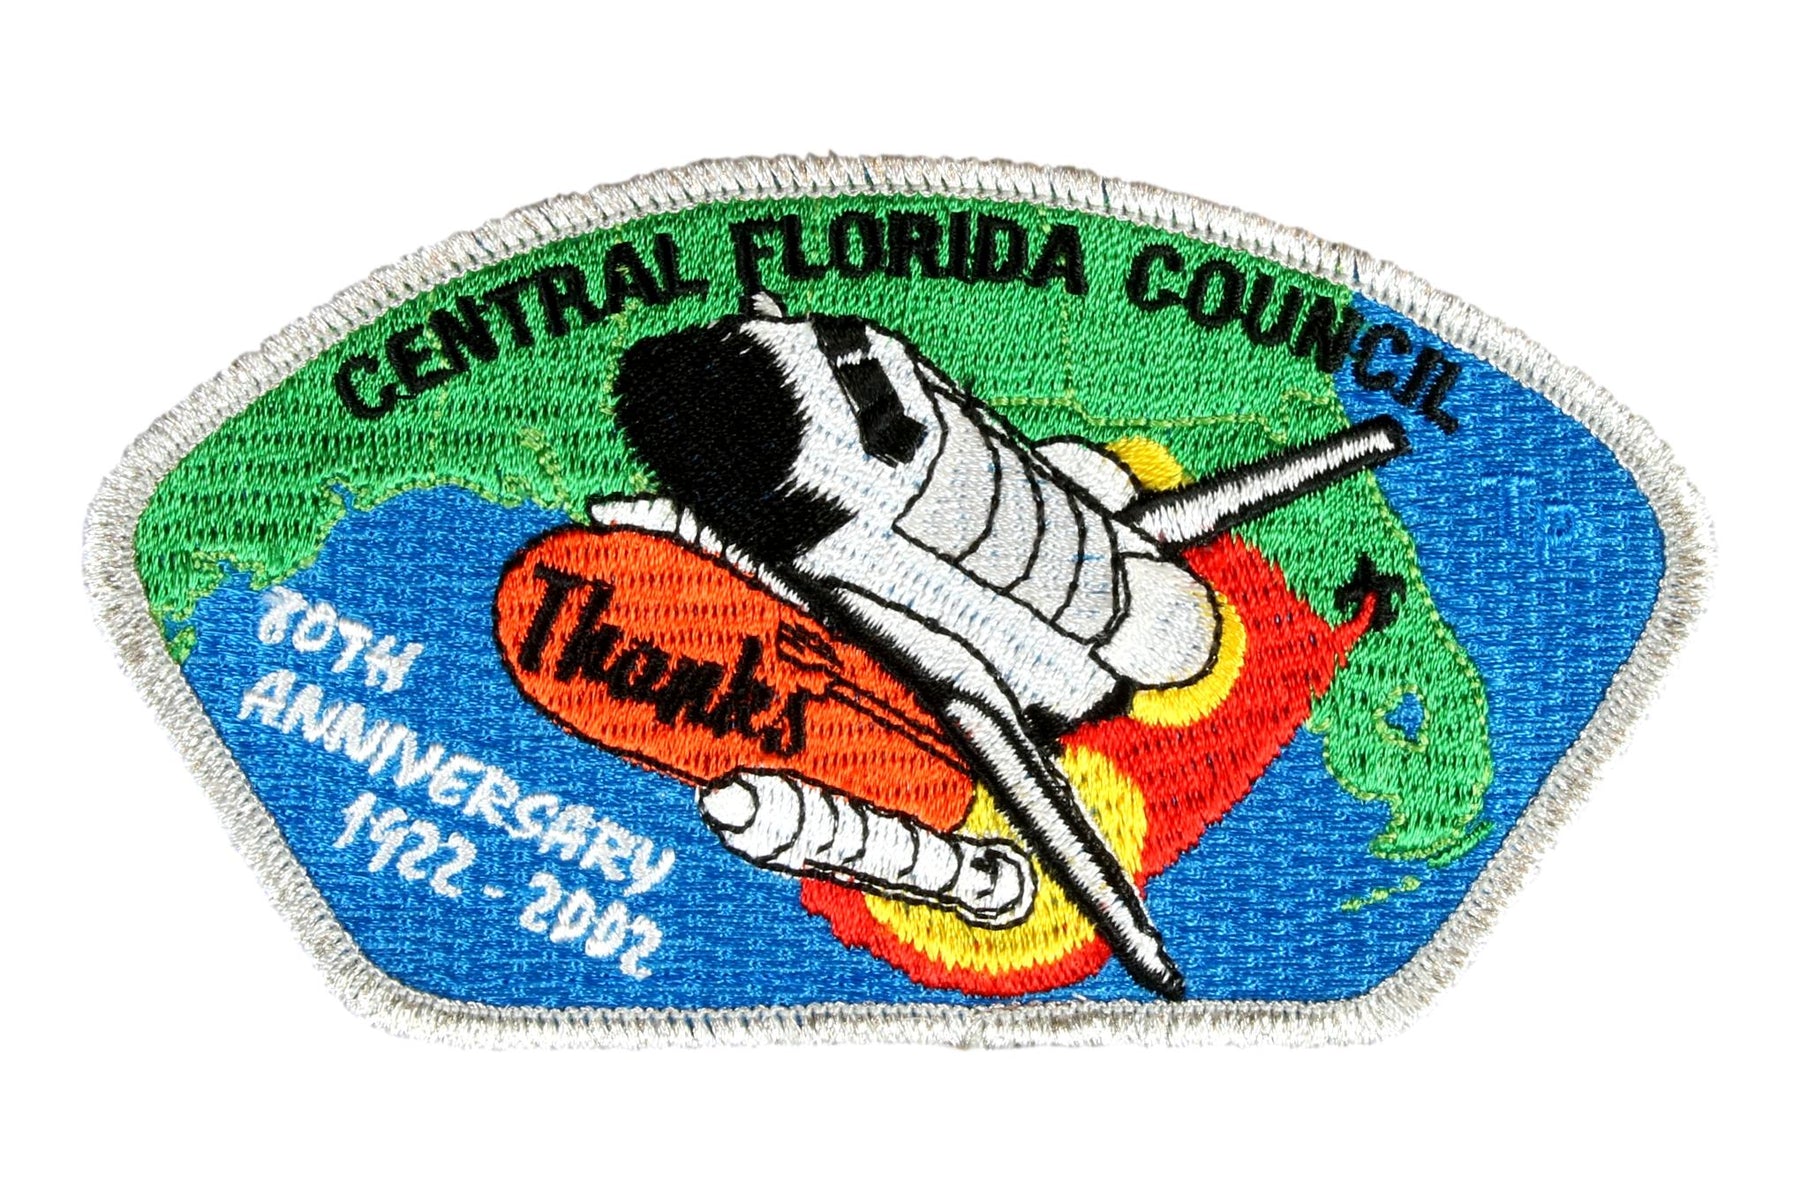 Central Florida CSP SA-36:1